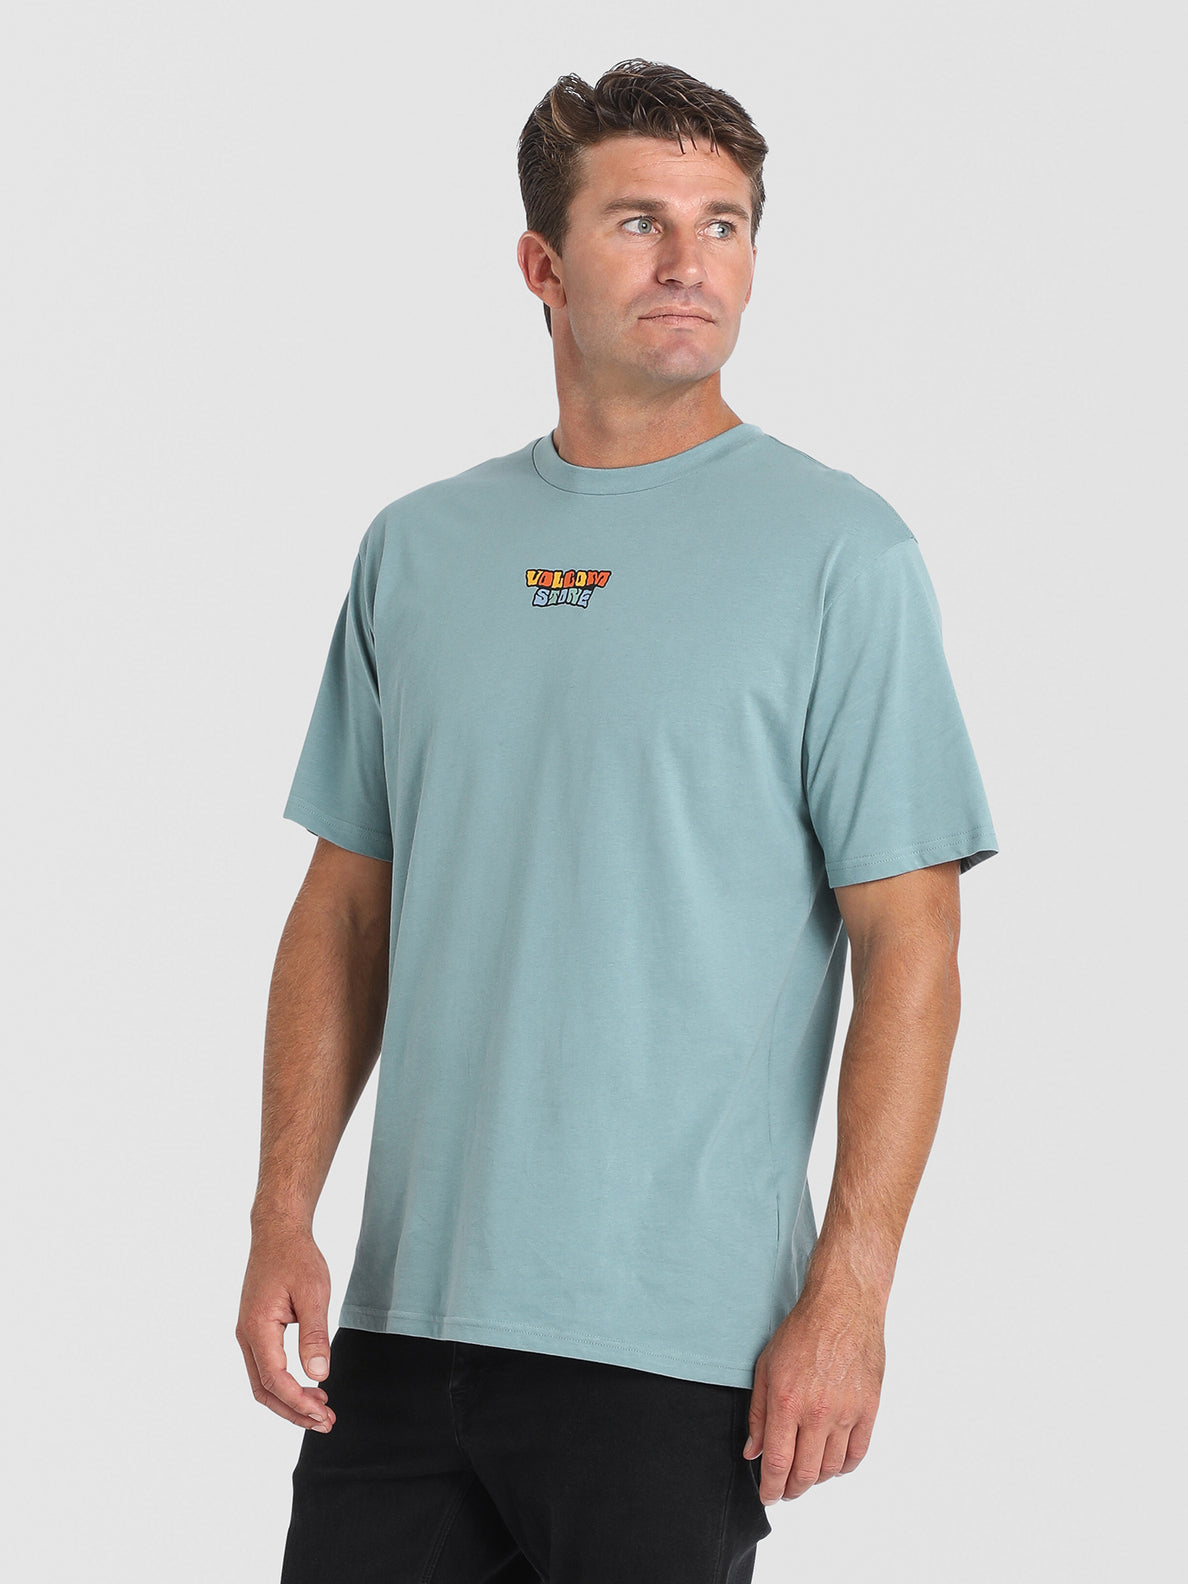 Daywaves Short Sleeve T-Shirt - Agave